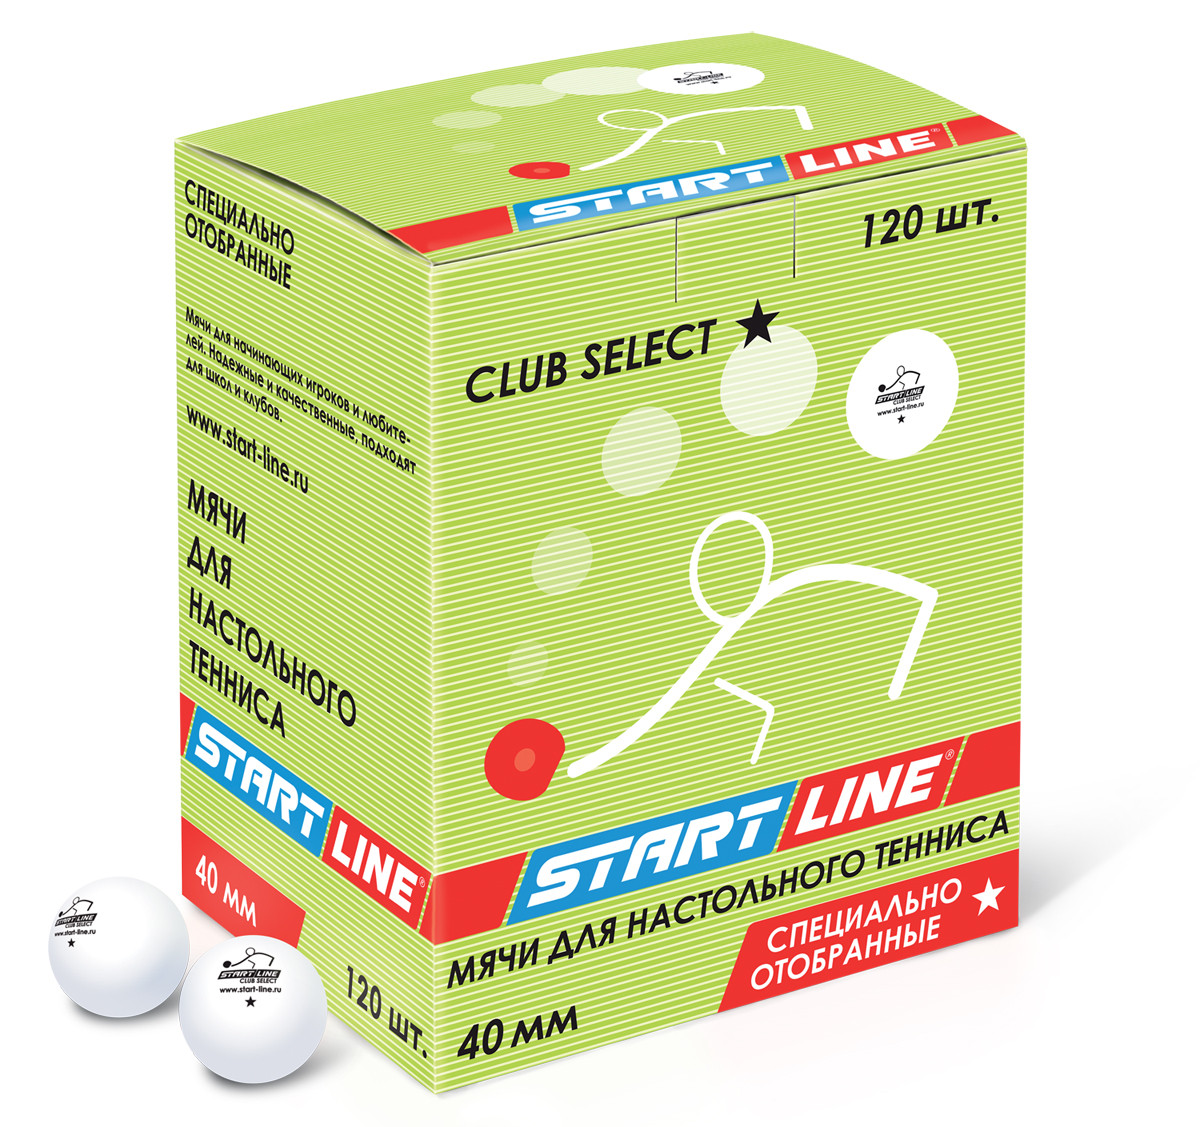 Шарики для настольного тенниса Club Select 1* (120 мячей в упаковке, белые)